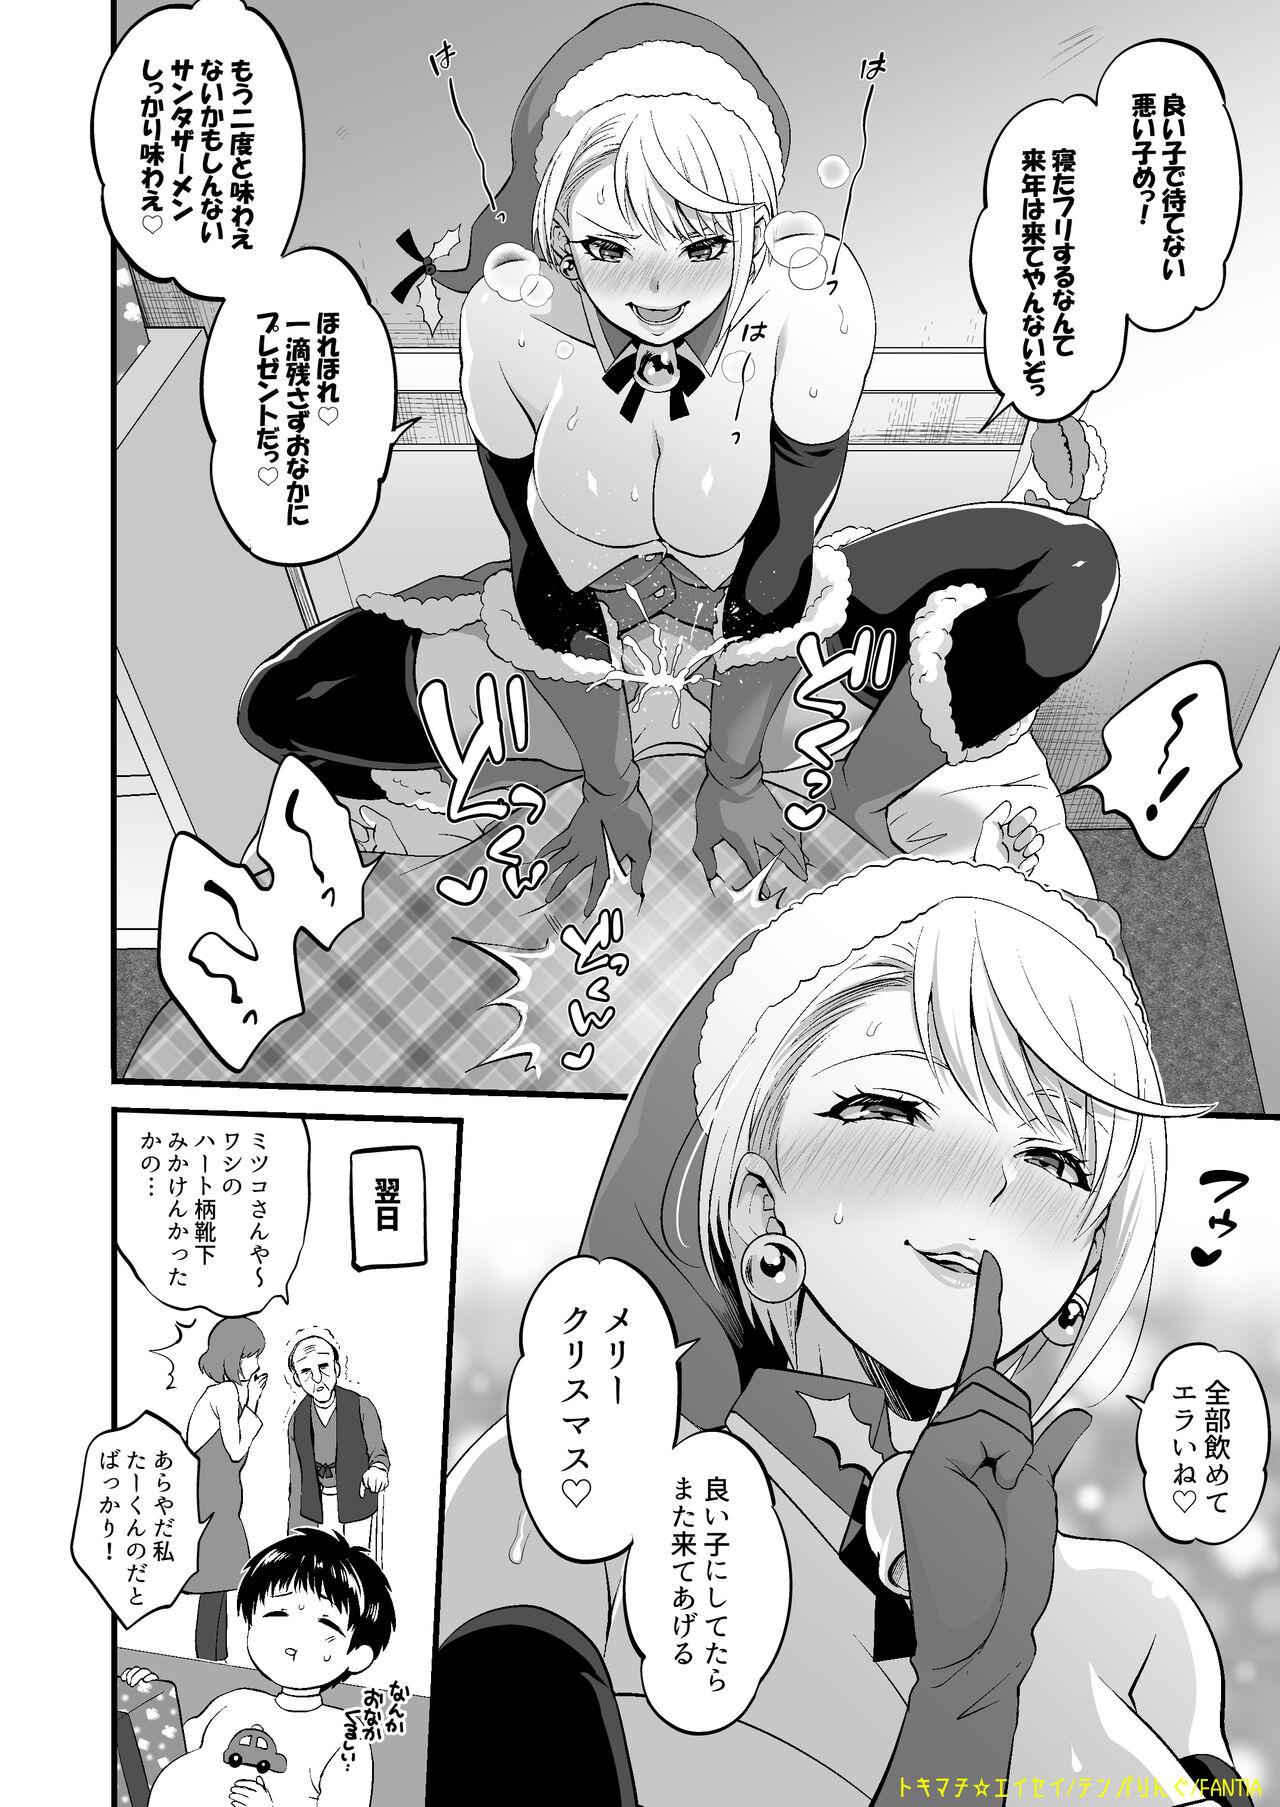 18yo Futanari Santa Manga - Original Chica - Page 4